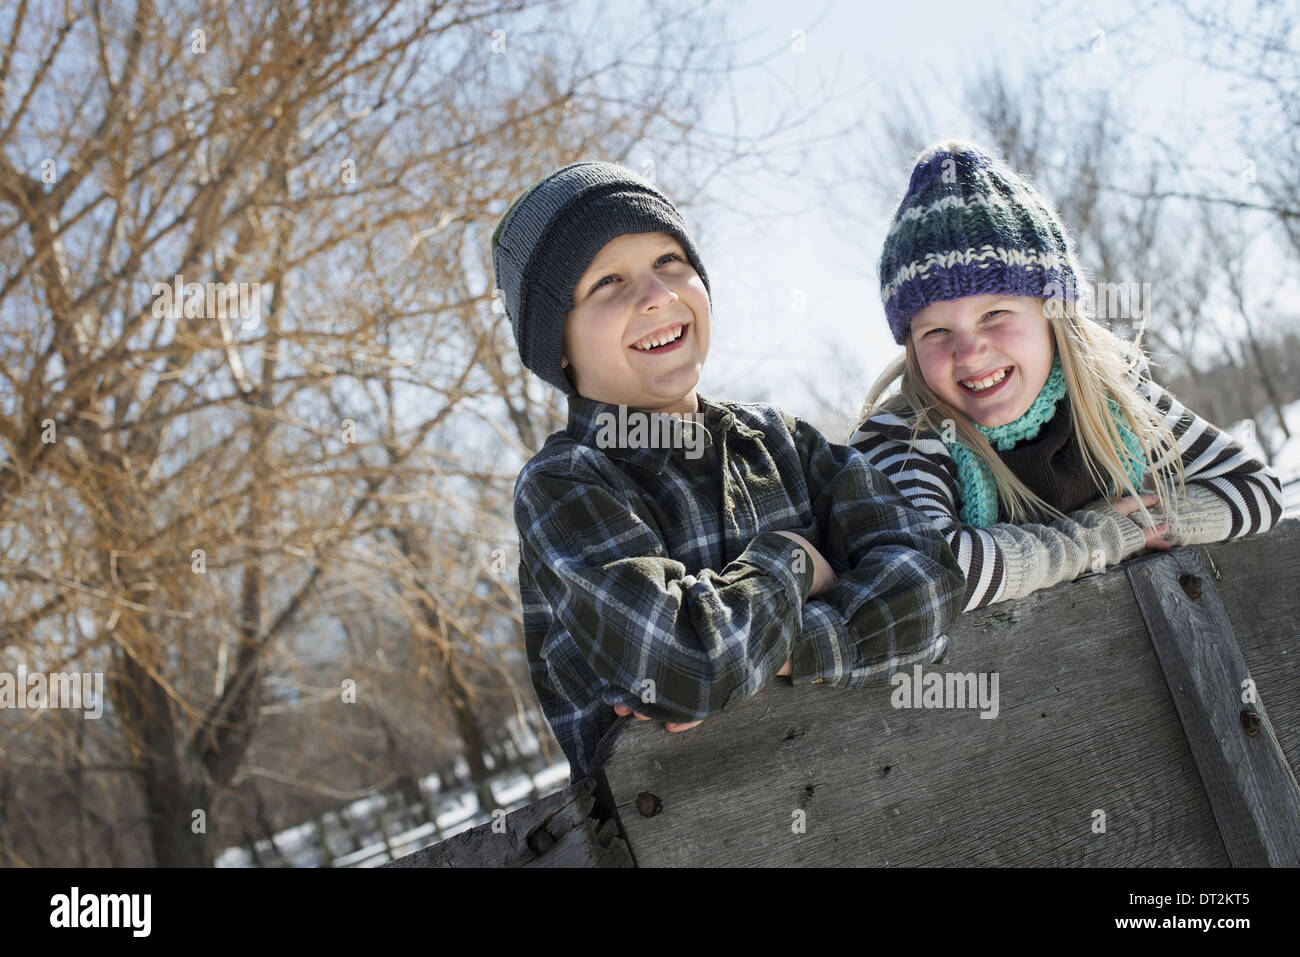 Paesaggio invernale con neve sul terreno due bambini in maglia cappelli appoggiato su di una recinzione Foto Stock